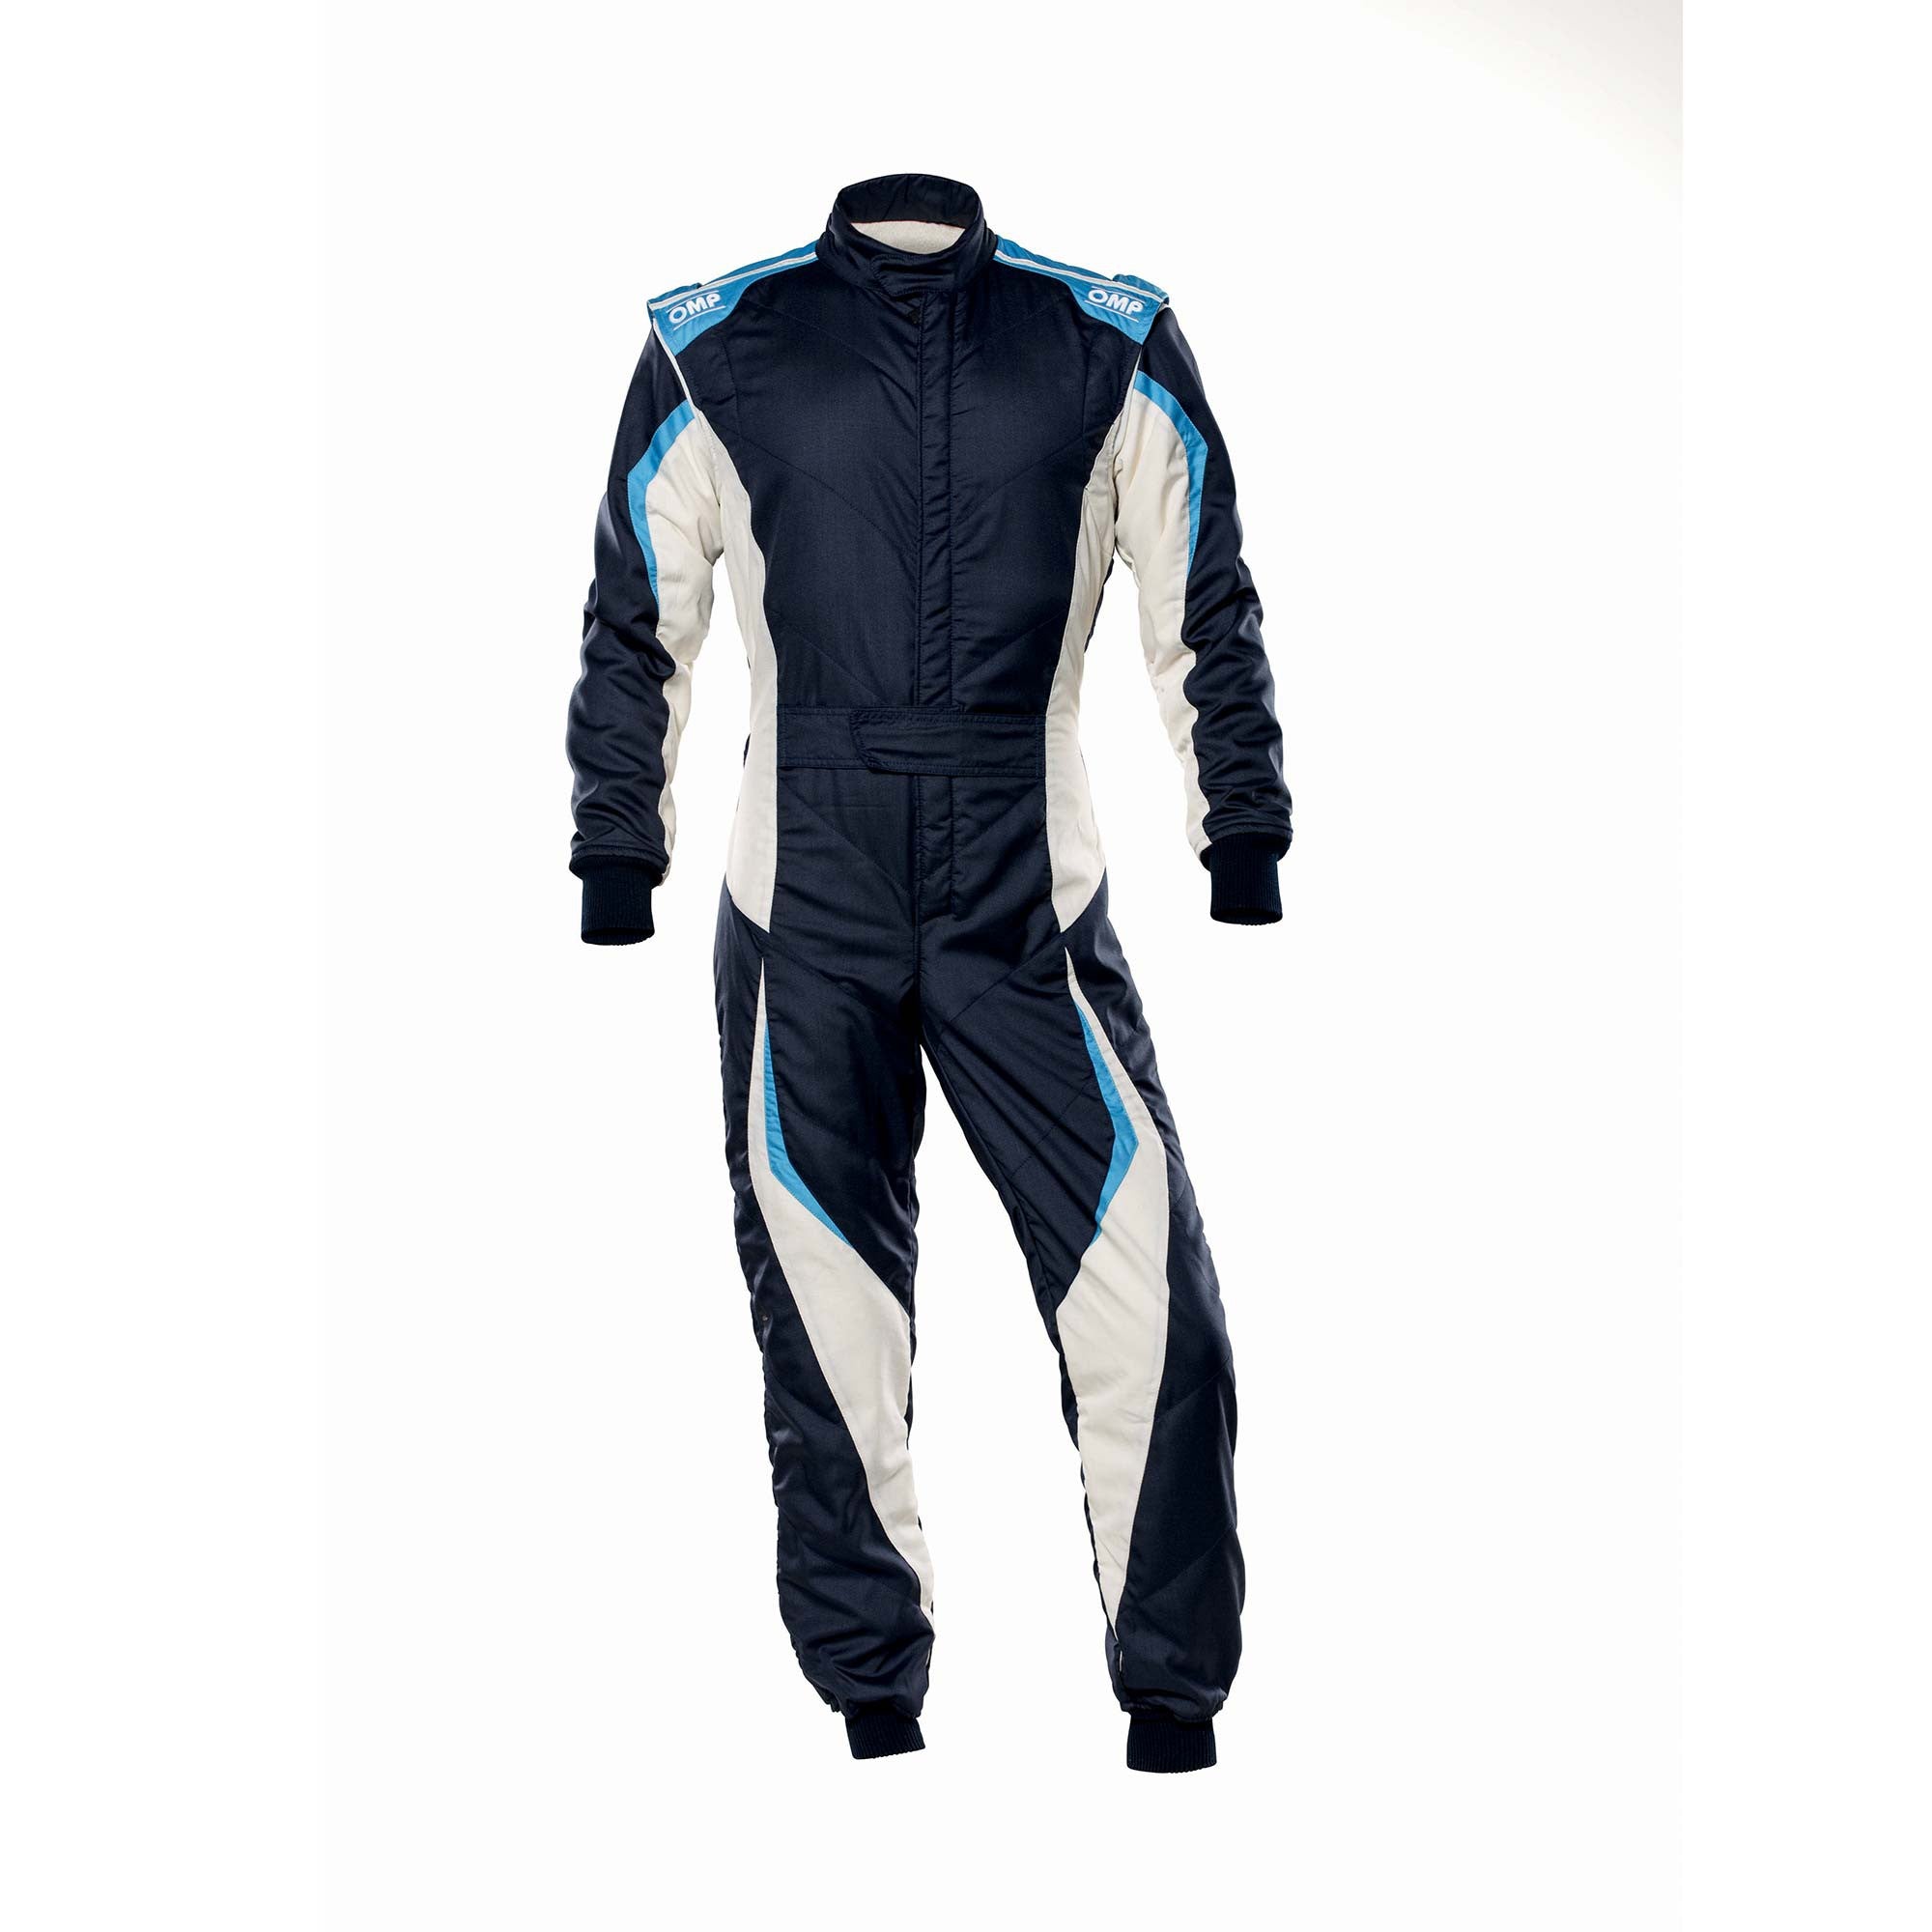 OMP IA0-1859-B01-246-58 Racing suit TECNICA EVO MY2021, FIA 8856-2018, navy blue/white/grey/cyan, size 58 Photo-0 